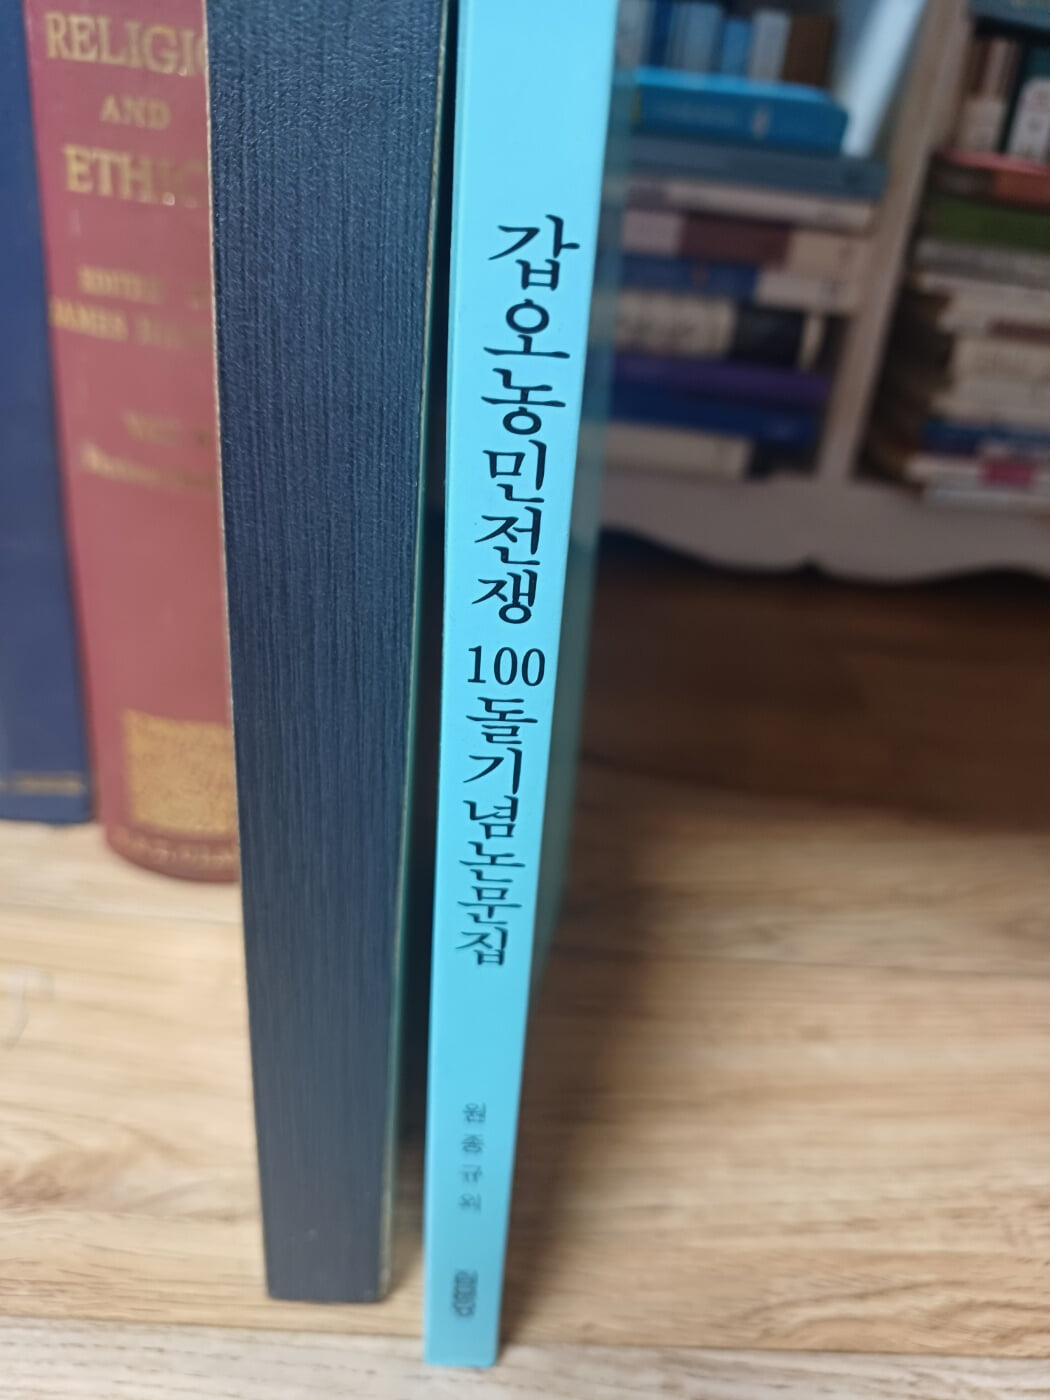 갑오농민전쟁 100돌 기념 논문집